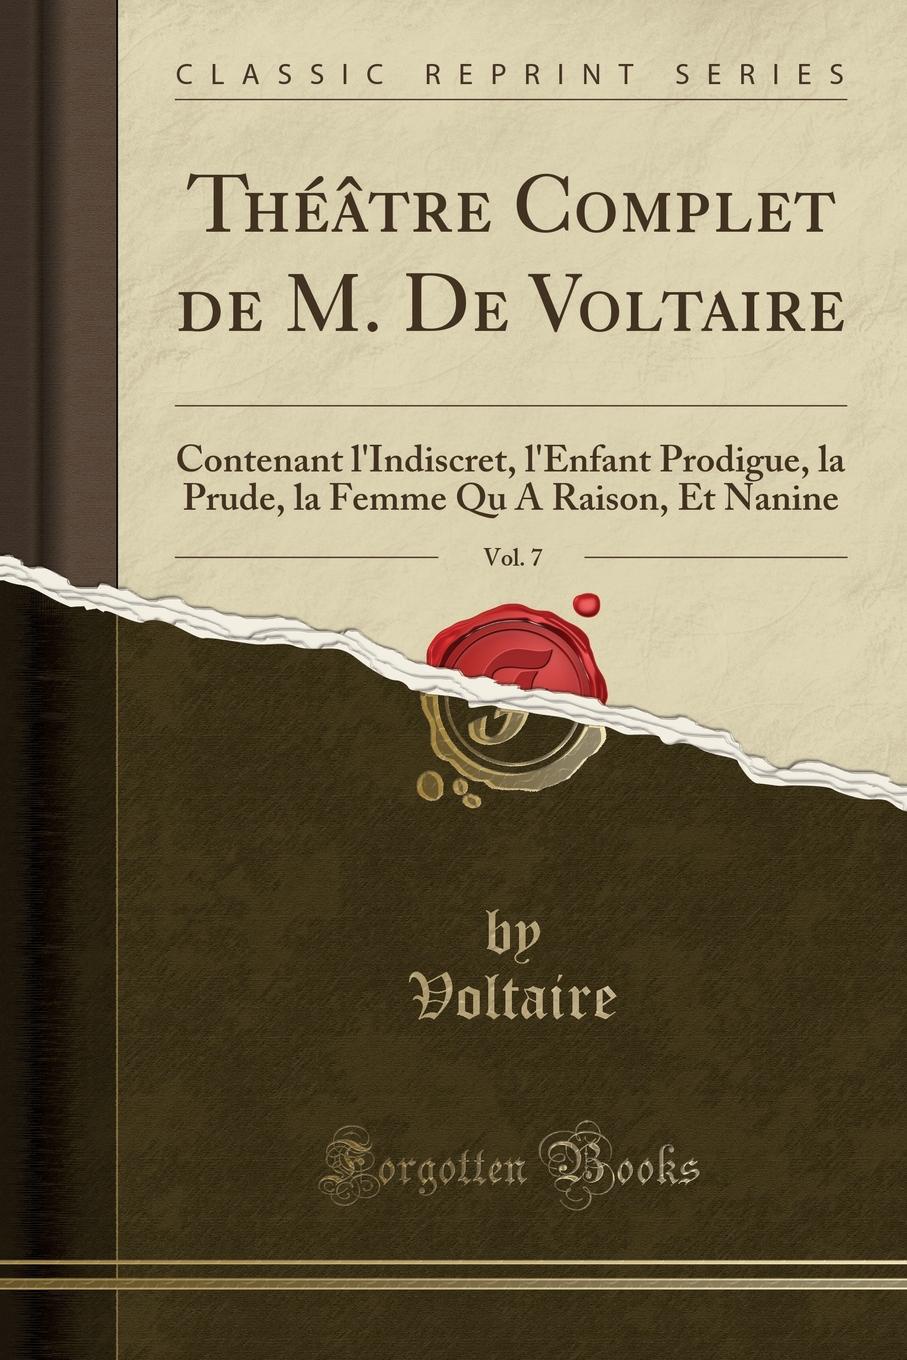 Voltaire Voltaire Theatre Complet de M. De Voltaire, Vol. 7. Contenant l.Indiscret, l.Enfant Prodigue, la Prude, la Femme Qu A Raison, Et Nanine (Classic Reprint)